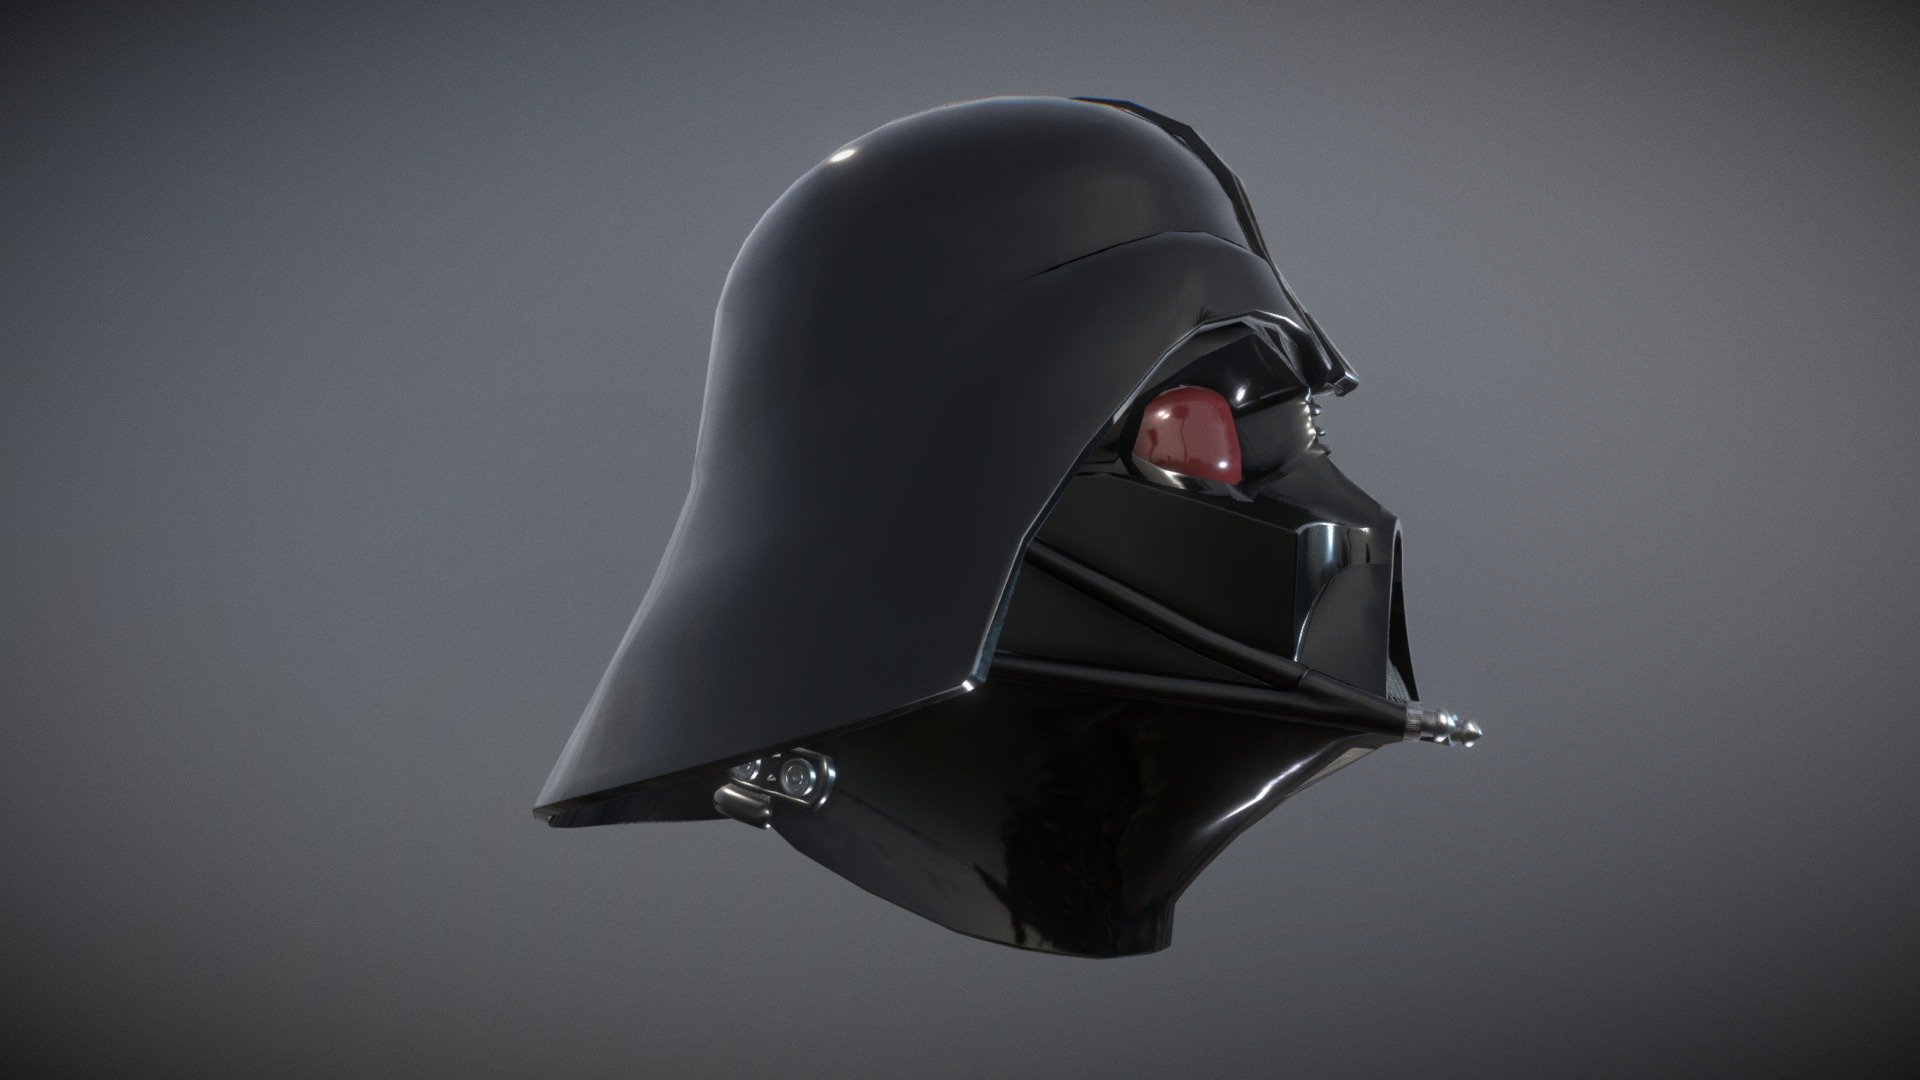 Darth Vader's Helmet I Game Ready - 3D model by jimshart 3d model